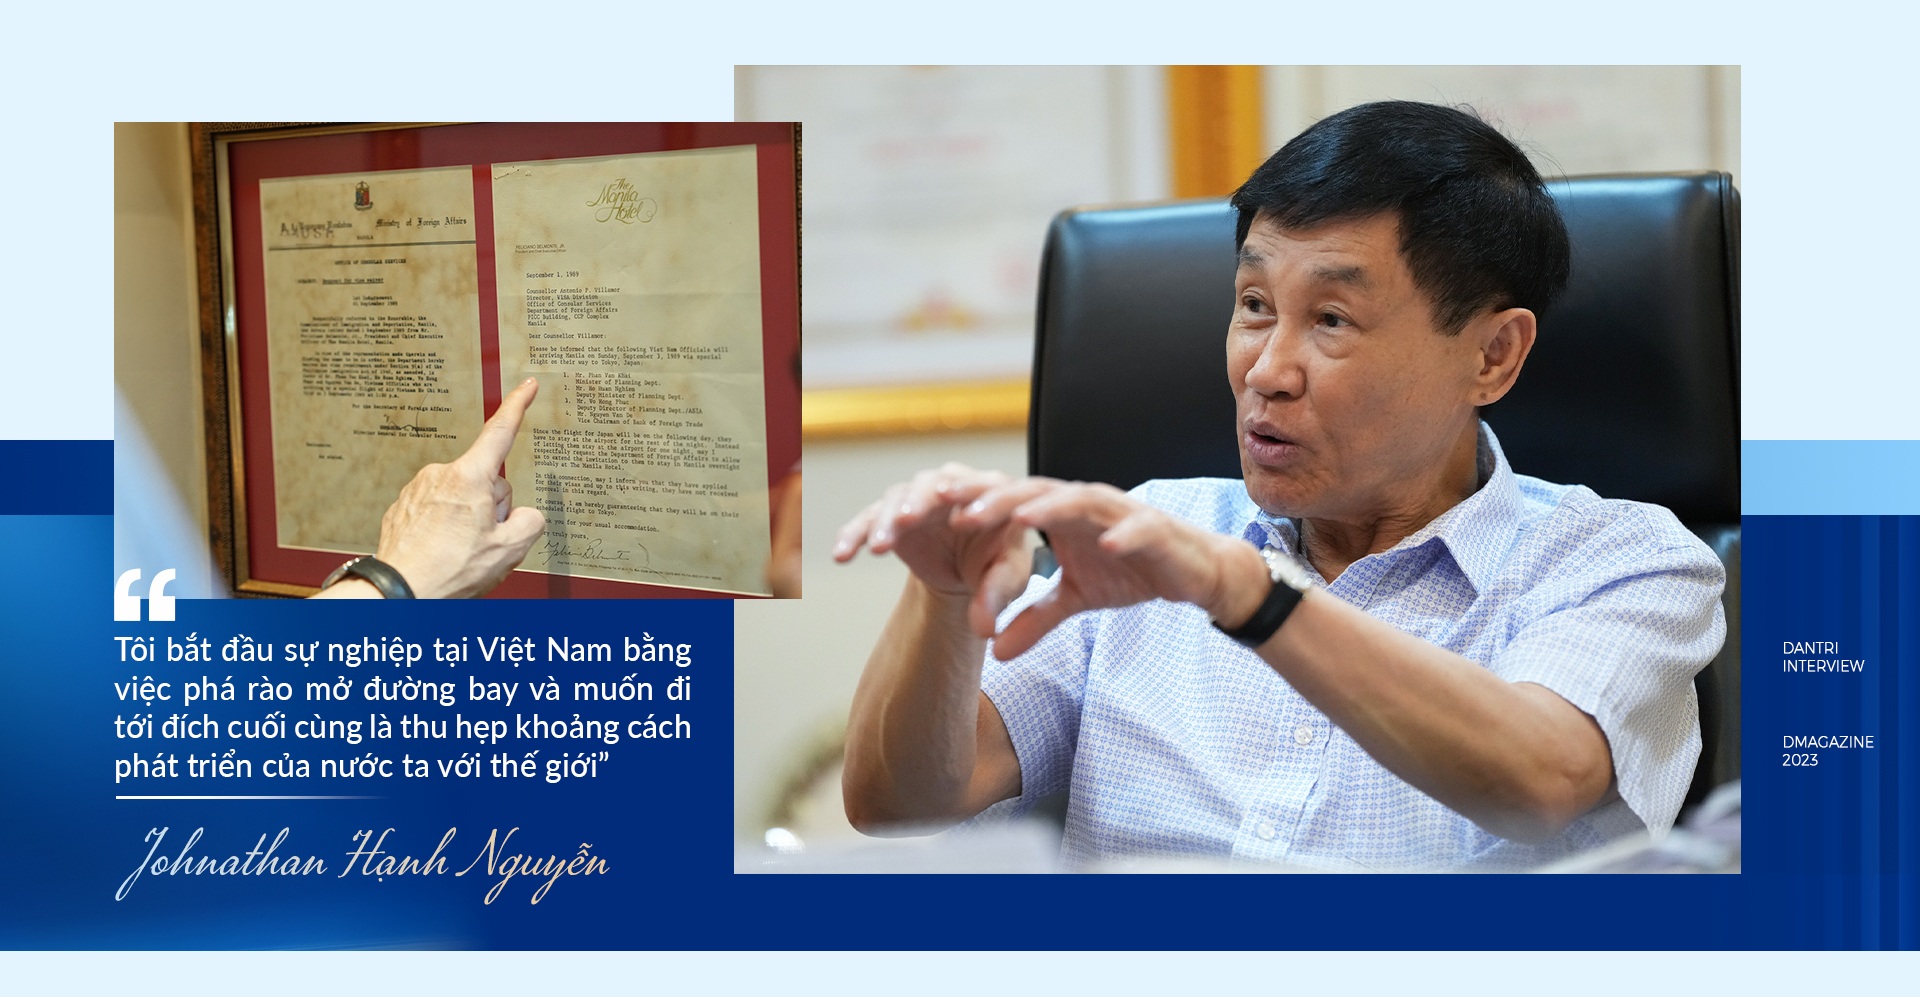 Cuộc gặp với cố Thủ tướng Phạm Văn Đồng thay đổi cuộc đời ông Johnathan Hạnh Nguyễn - 28